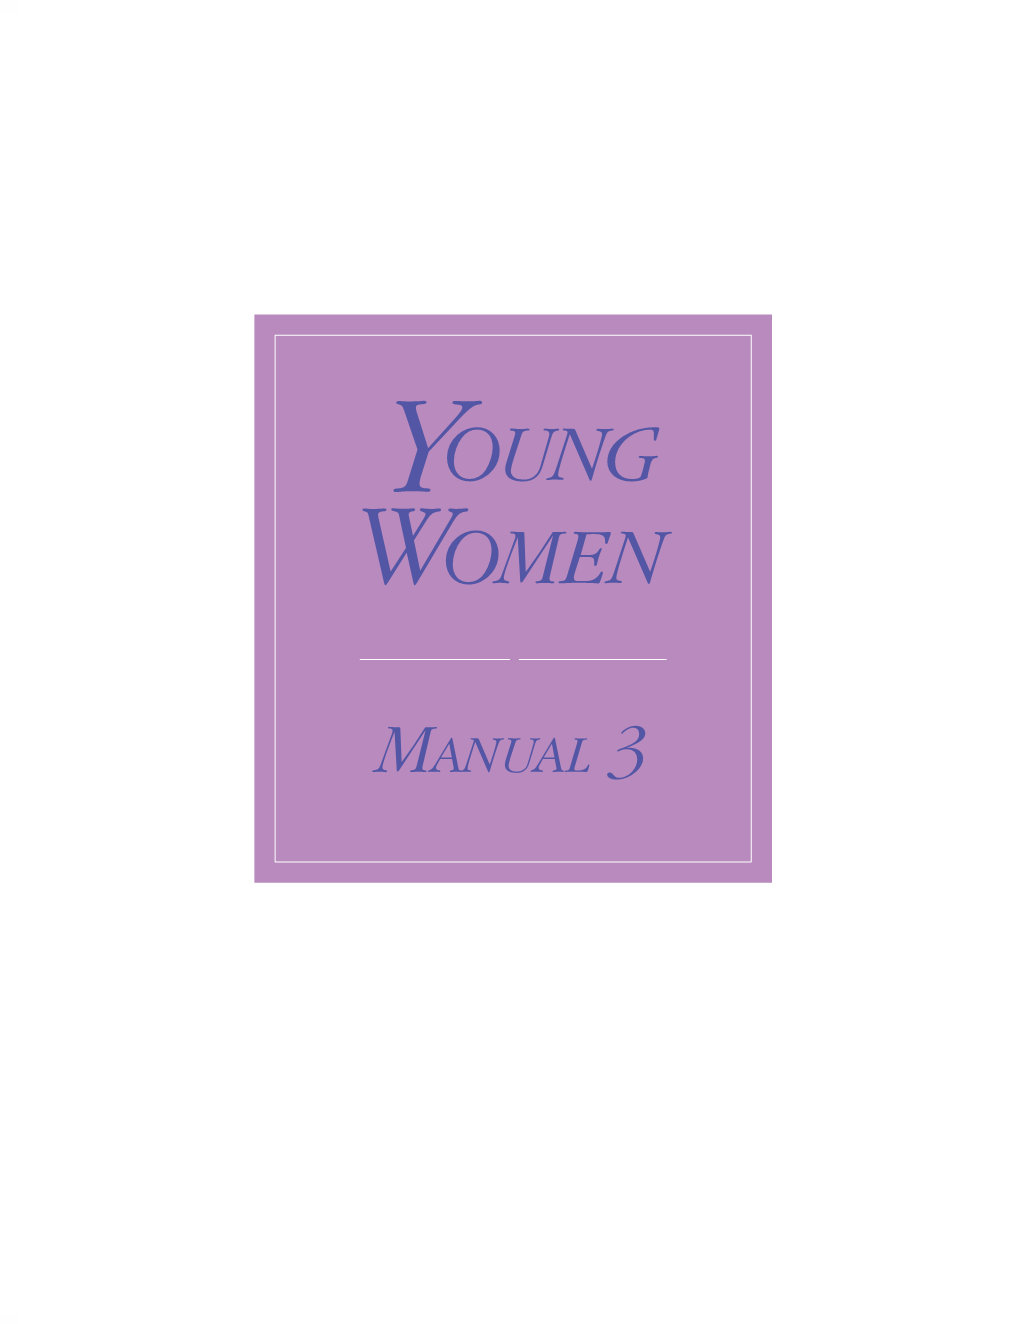 Young Women Manual 3